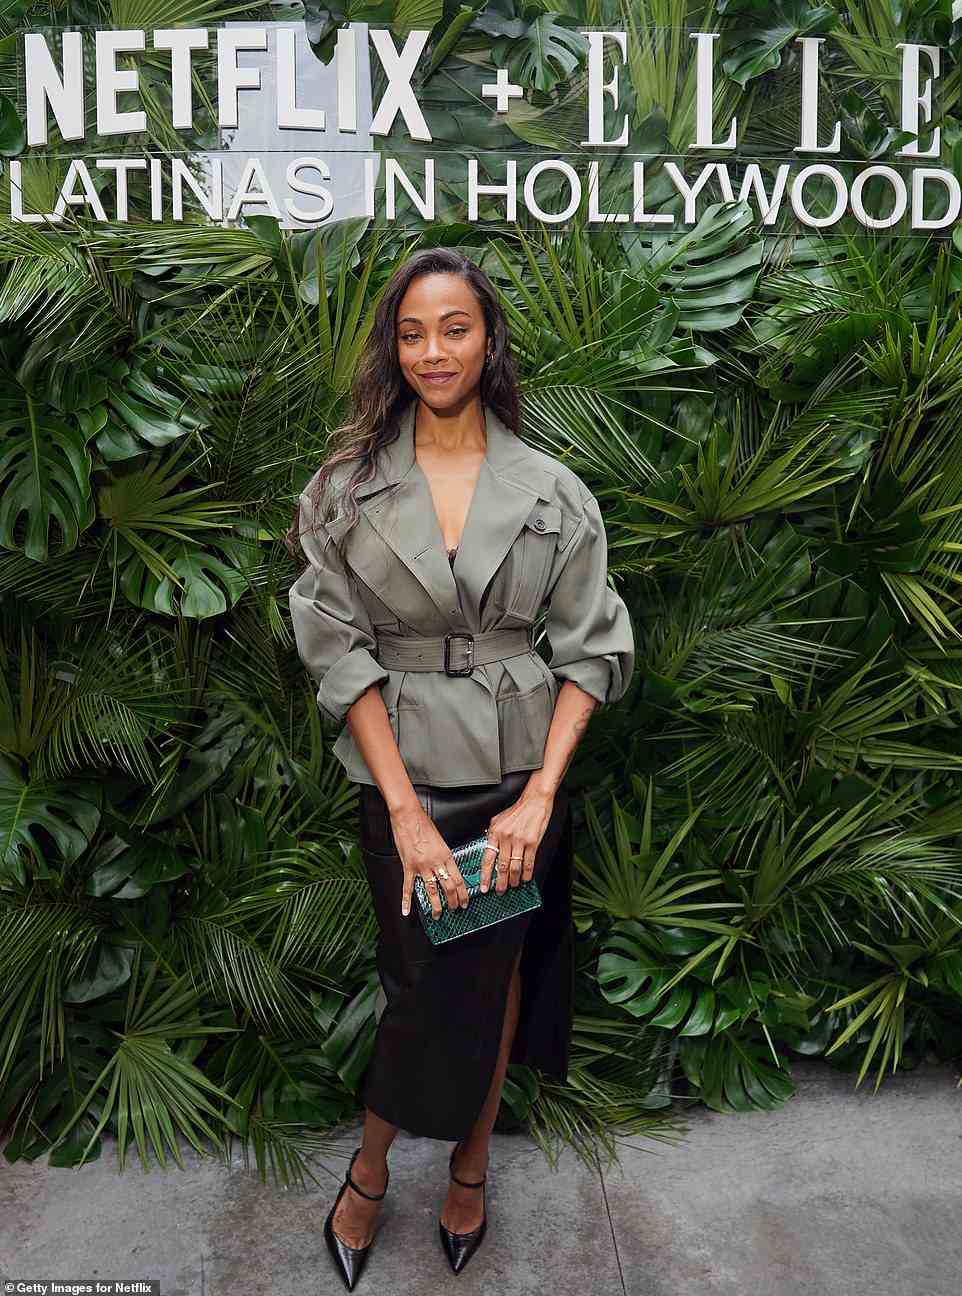 Stilvoller Auftritt: Zoe Saldana, 44, war eine von vielen Prominenten, die am frühen Sonntag in Los Angeles an der Veranstaltung von Netflix und Elle Latinas in Hollywood teilnahmen